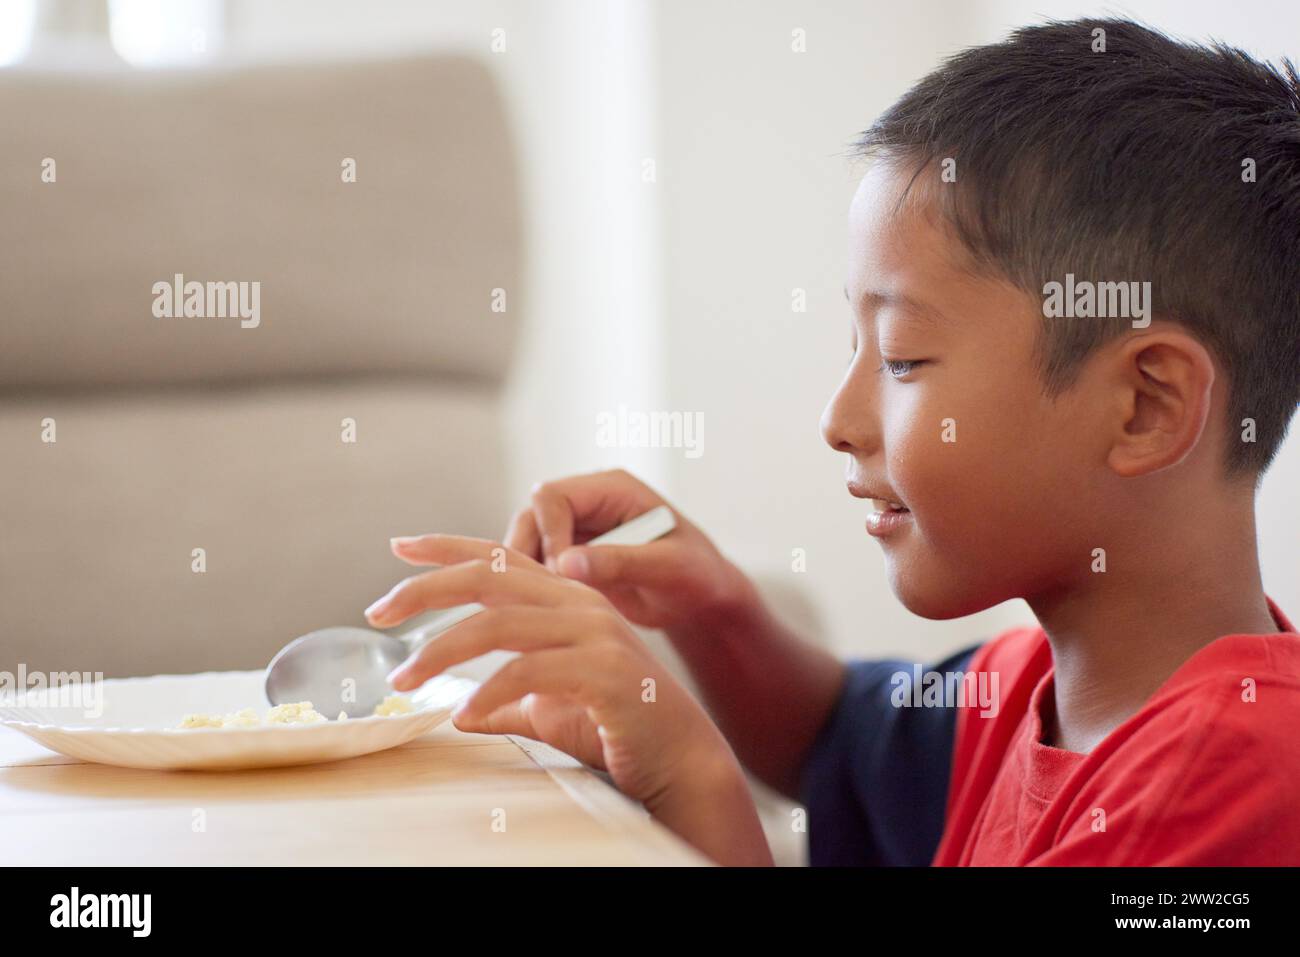 Junge, der an einem Tisch sitzt und Essen isst Stockfoto